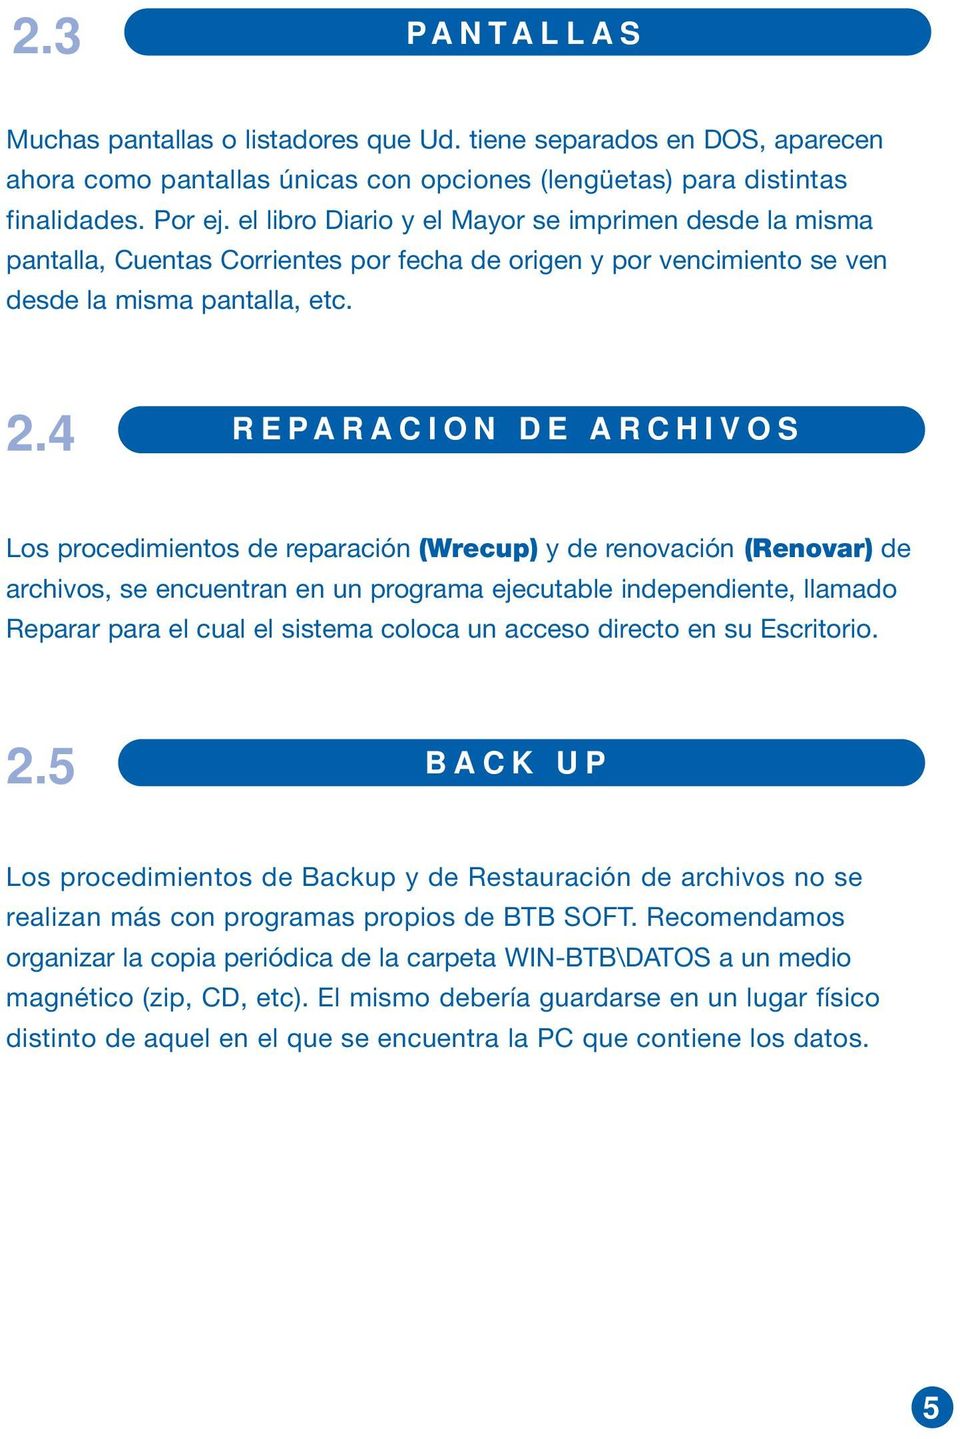 4 REPARACION DE ARCHIVOS Los procedimientos de reparación (Wrecup) y de renovación (Renovar) de archivos, se encuentran en un programa ejecutable independiente, llamado Reparar para el cual el